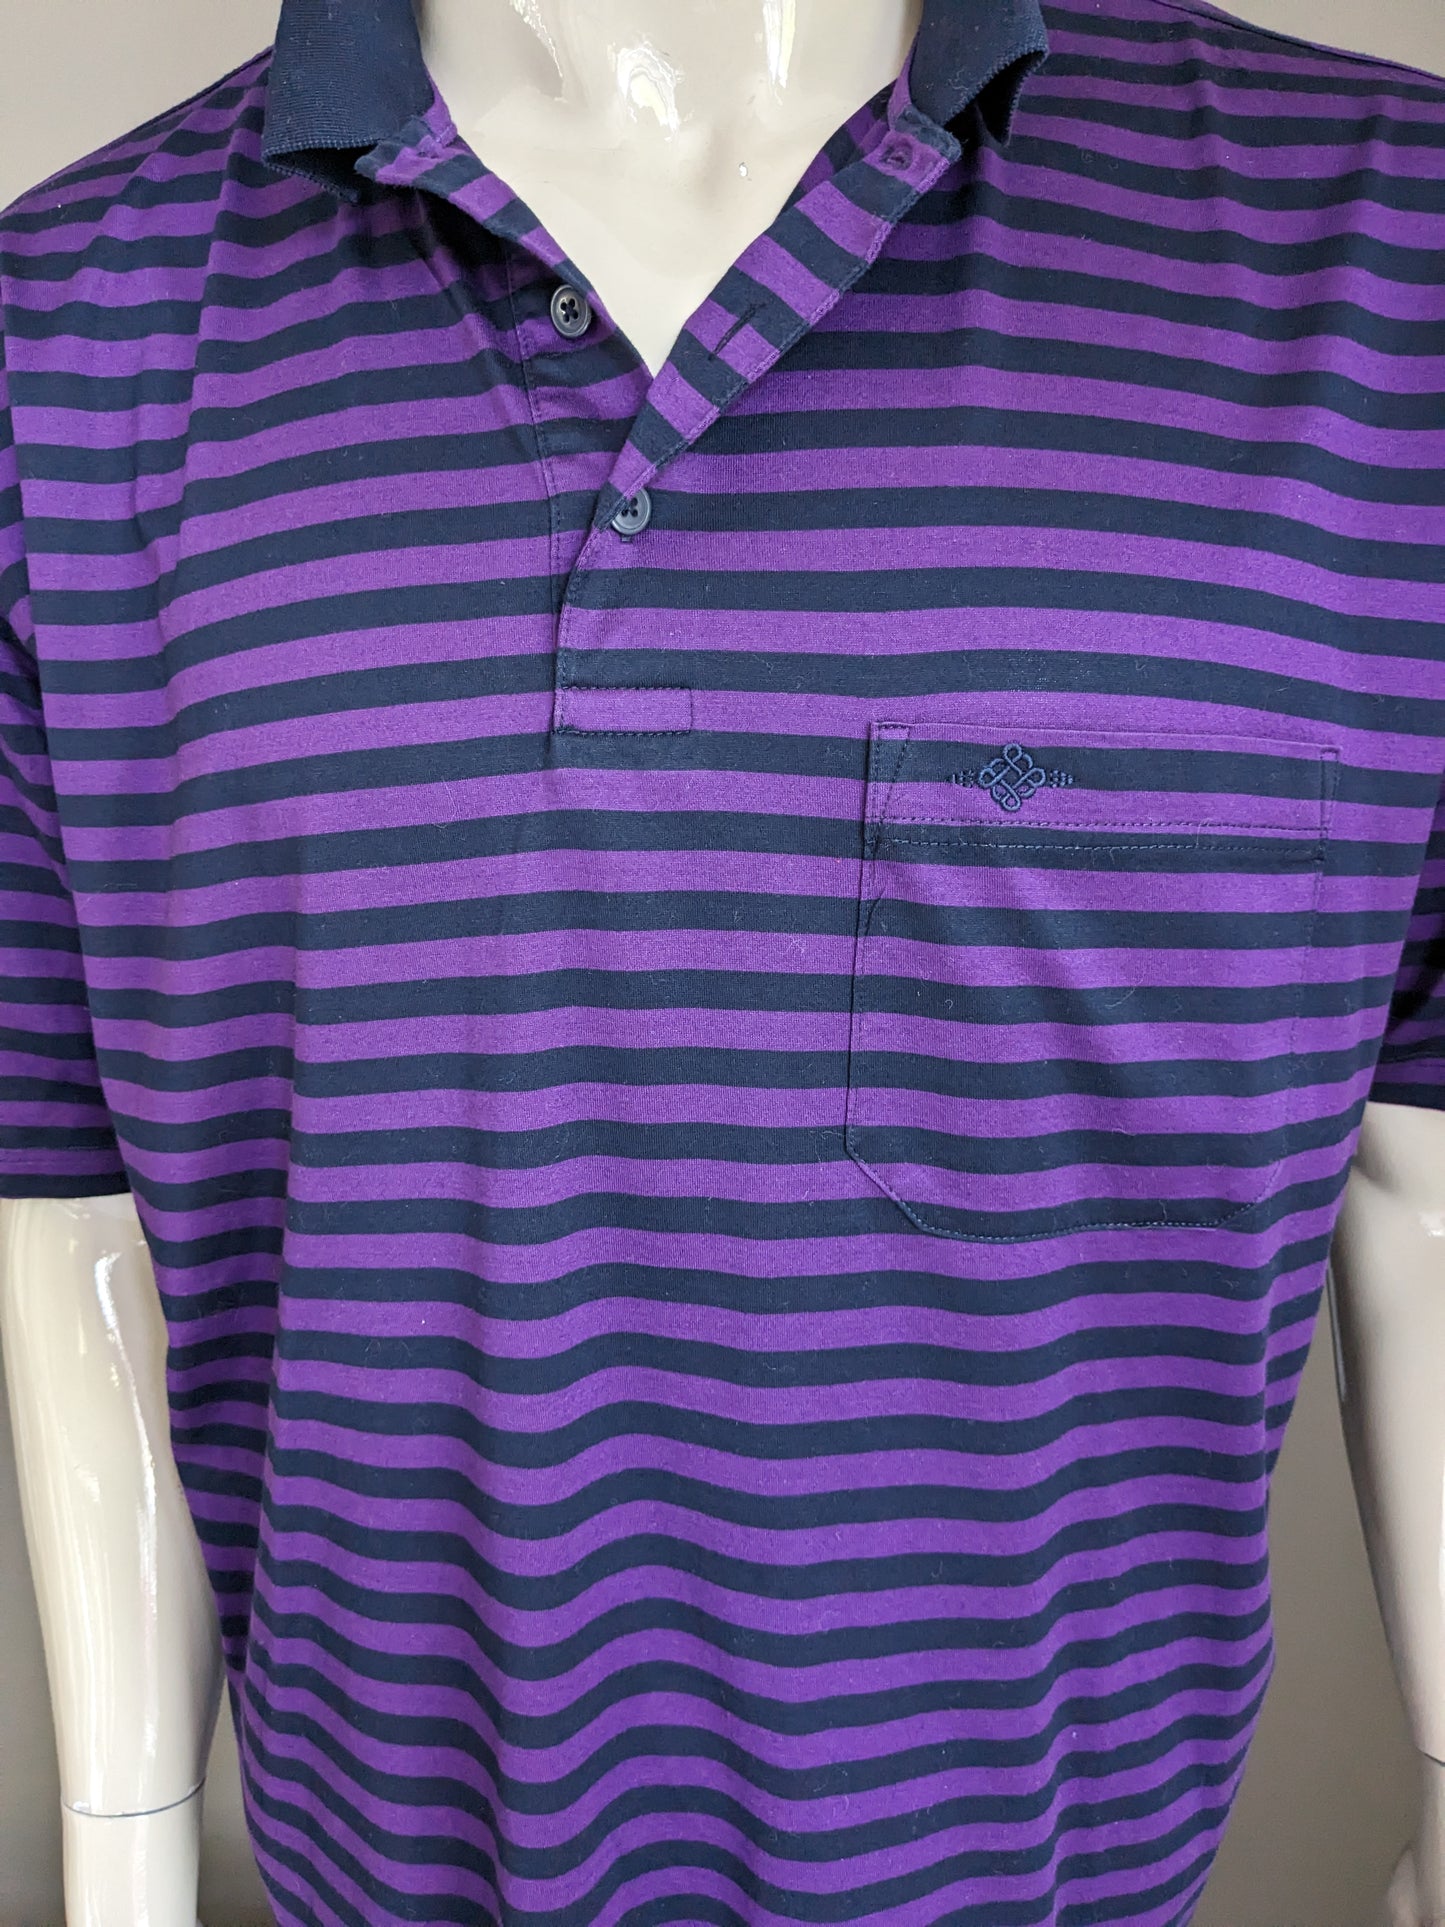 Baileys Polo. Purple black striped. Size 3XL / XXXL.